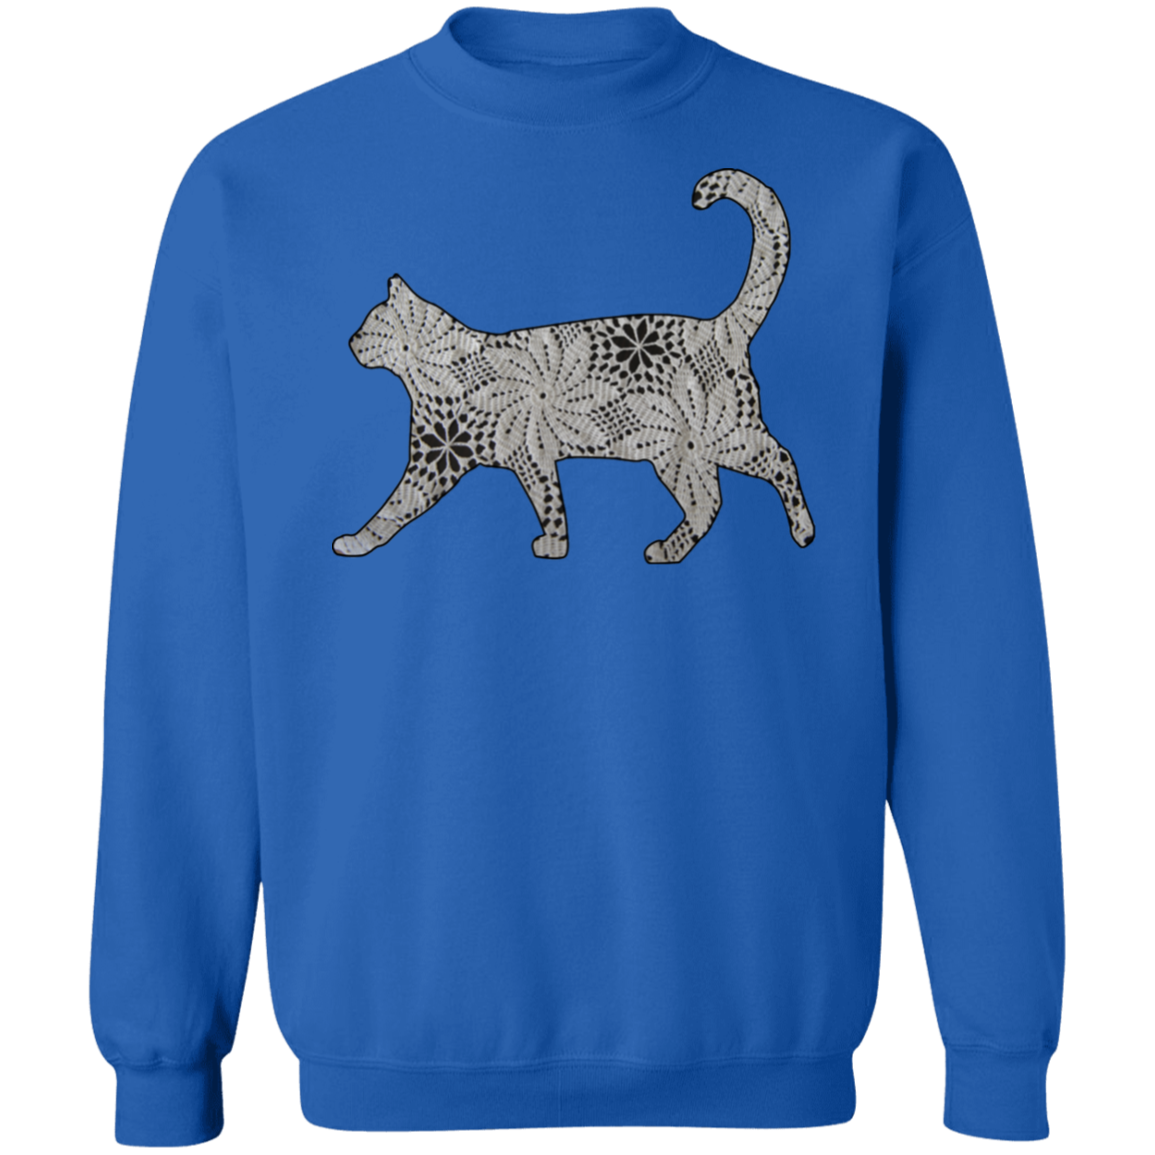 Crochet Cat Crewneck Pullover Sweatshirt